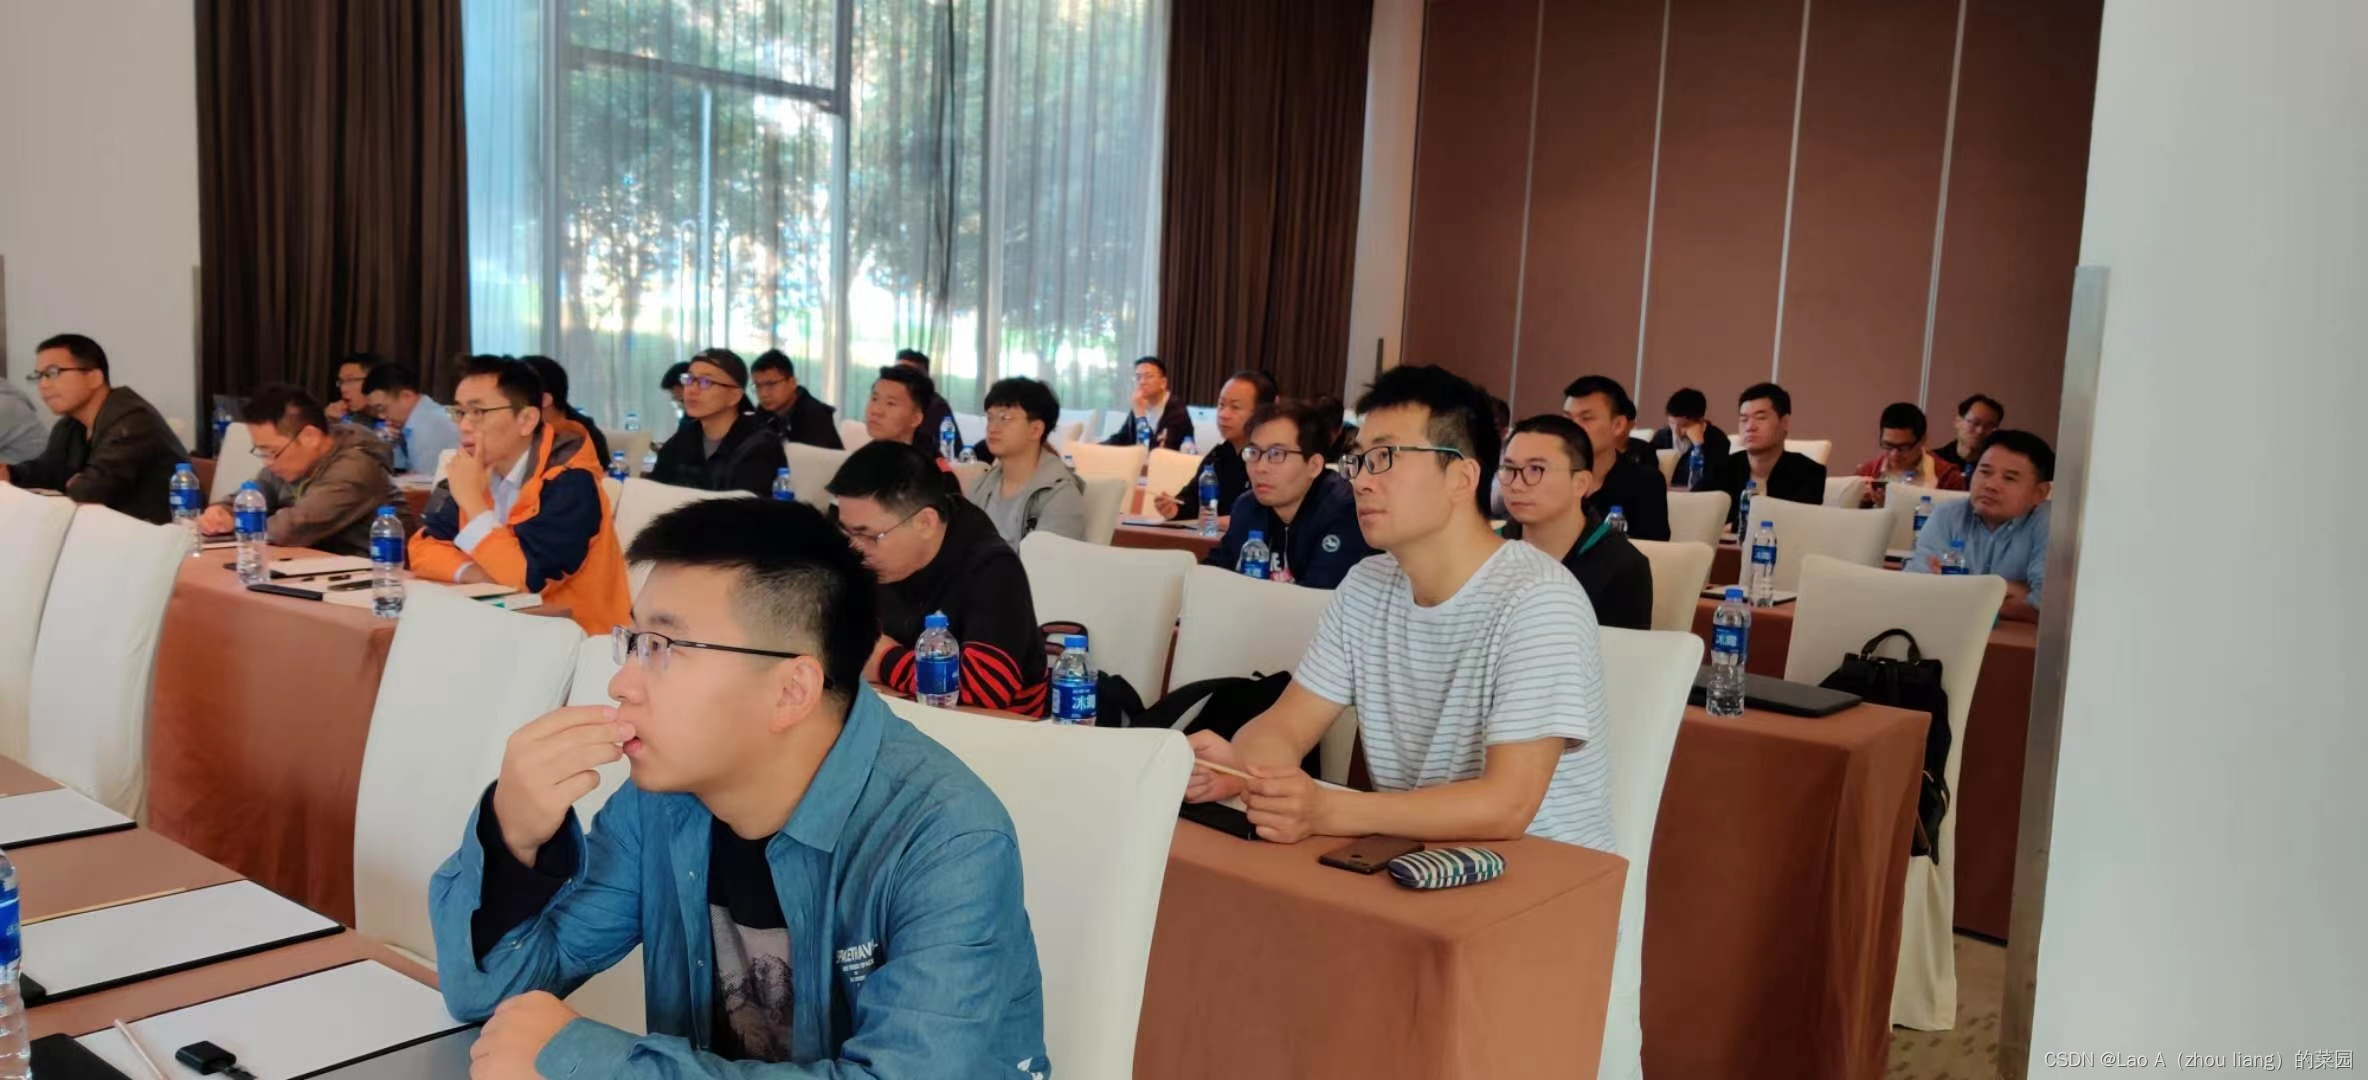 中国南方Oracle用户组沙龙活动：大环境下的Oracle数据库的机遇与挑战